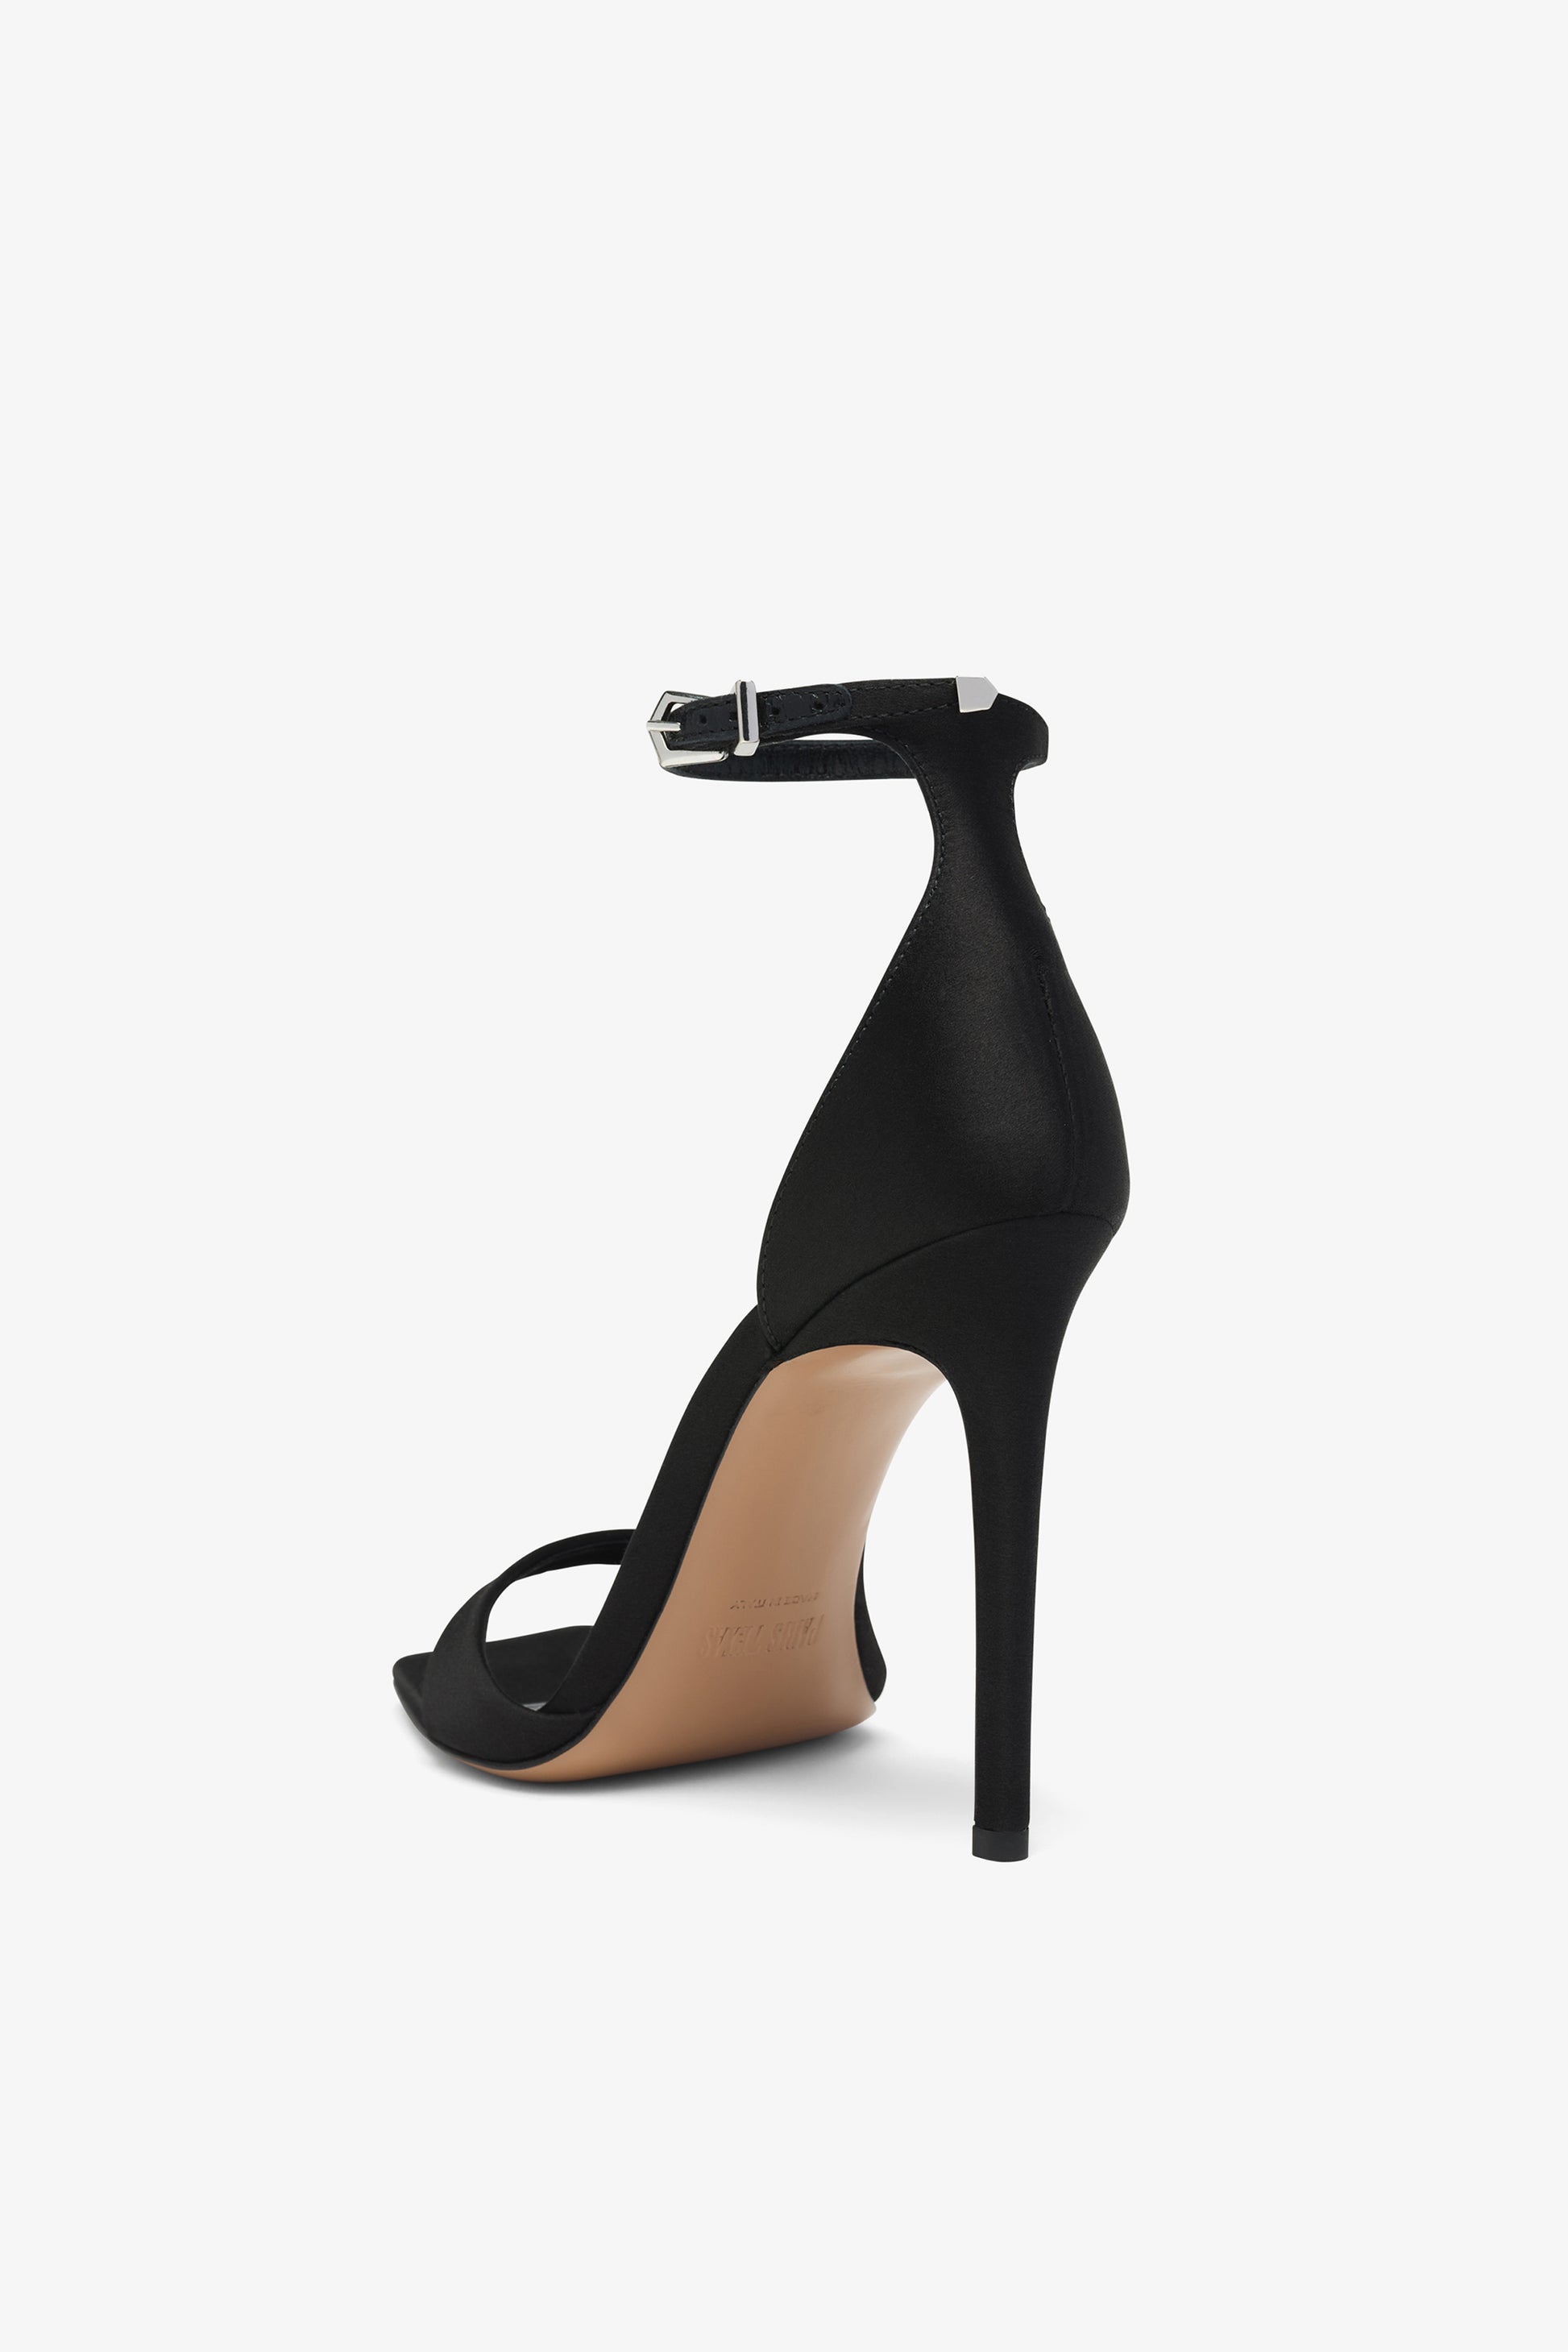 Sandales `a talon stiletto en cuir noir